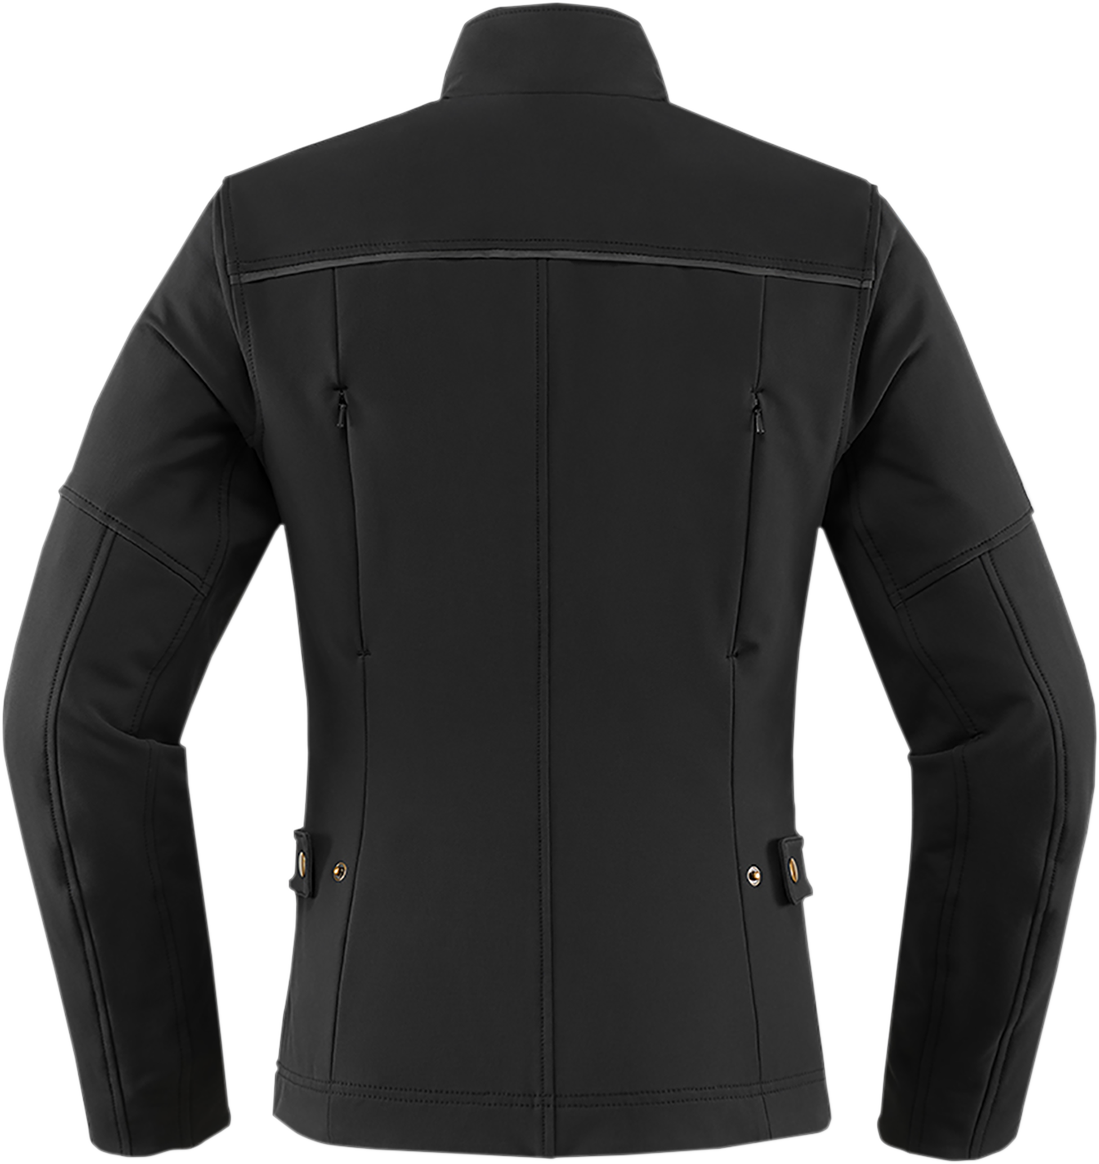 ICON Women's Hella2™ Jacket - Black - Large 2822-1267